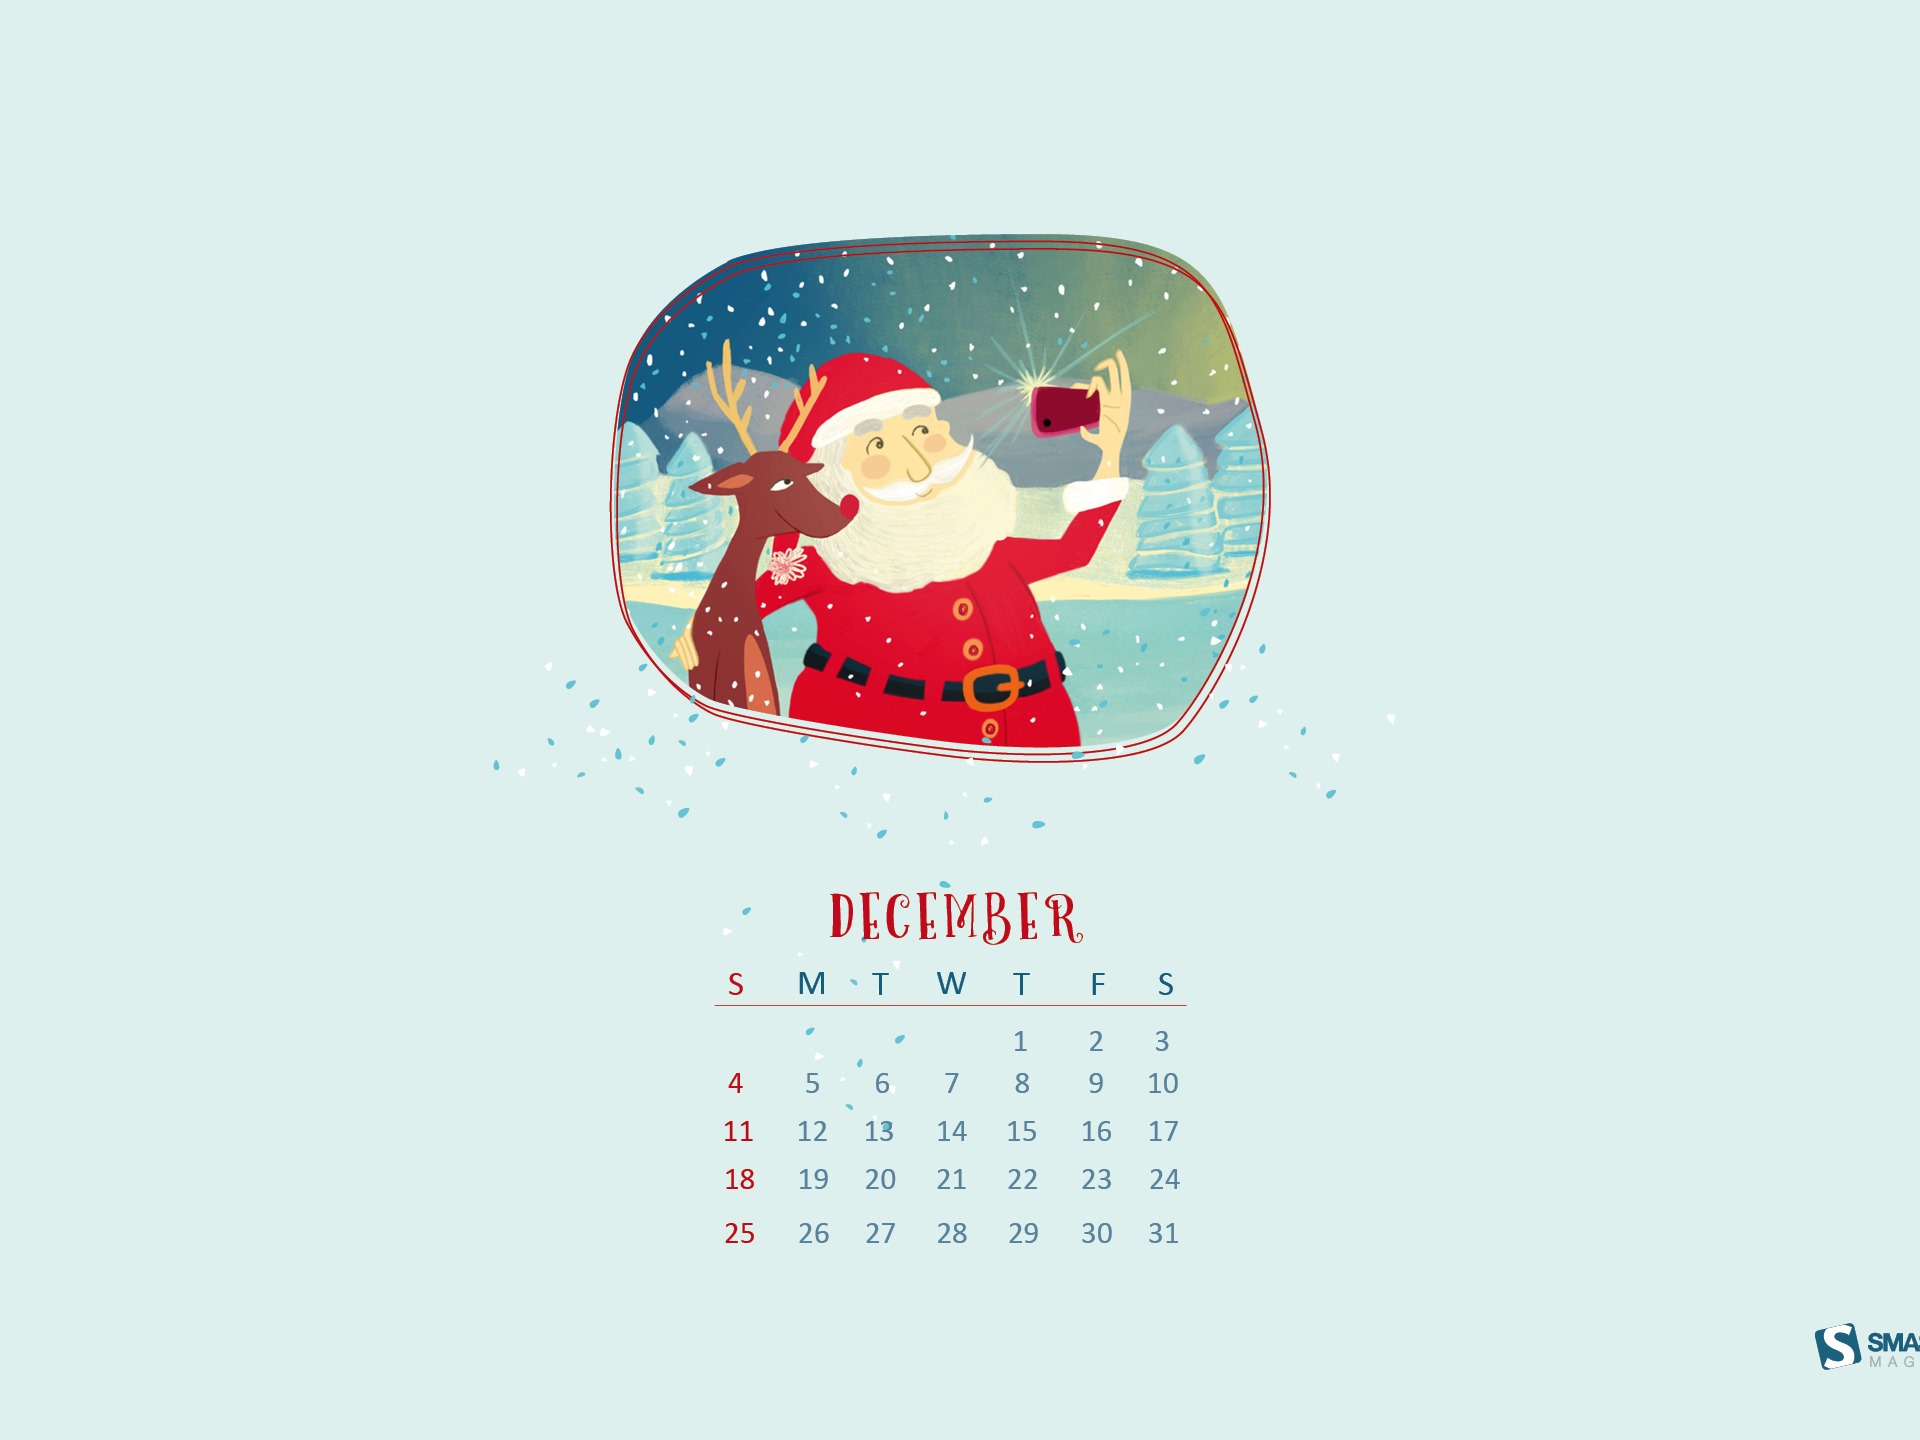 December 2016 Christmas theme calendar wallpaper (1) #15 - 1920x1440